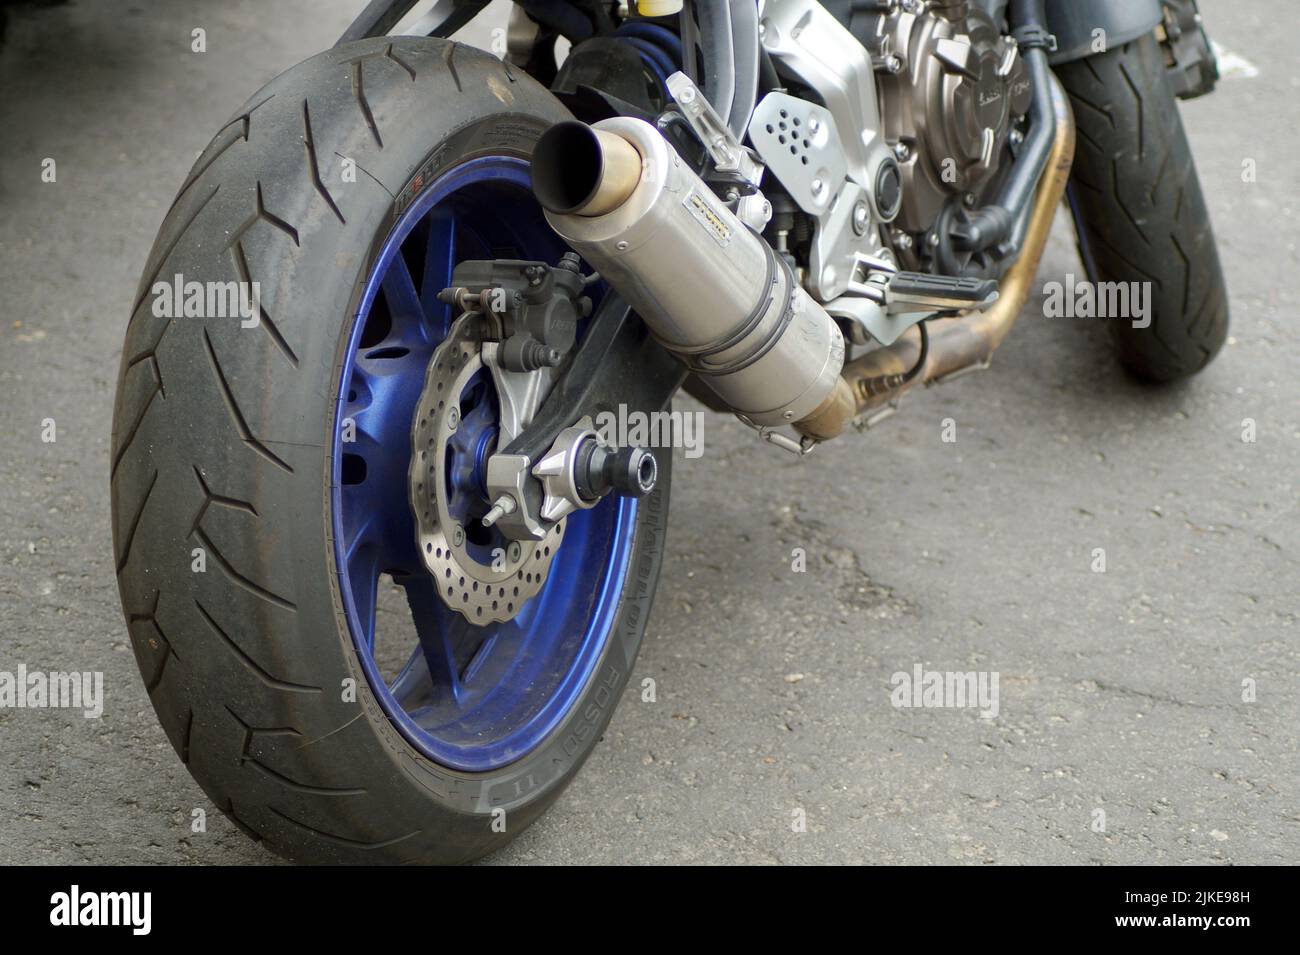 la foto mostra una parte di una motocicletta sportiva - la ruota posteriore, il tubo di scarico, preso molto vicino Foto Stock